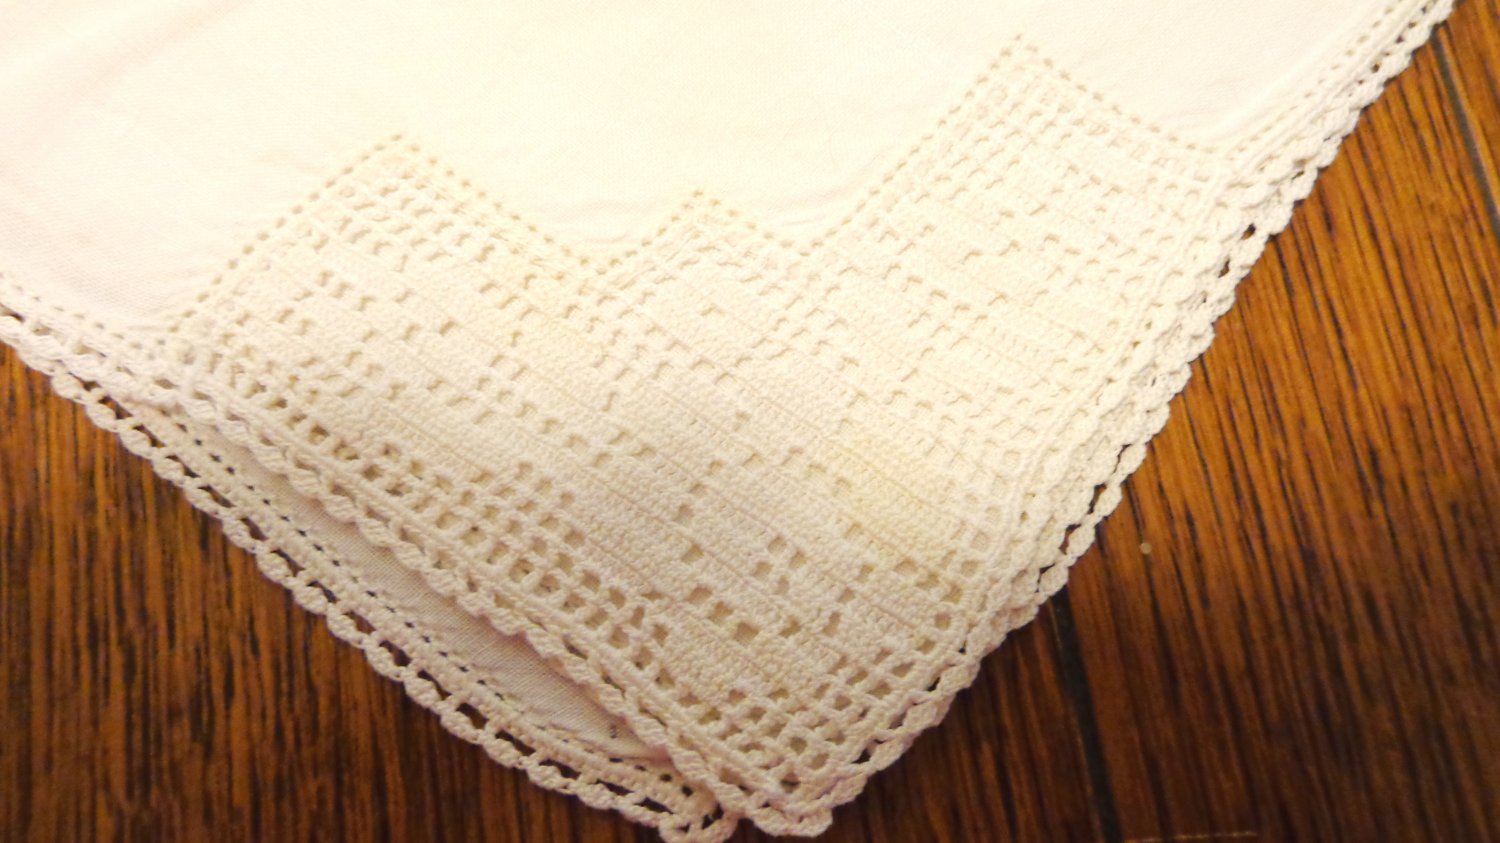 Antique napkins set of 3 off white linen filet lace trim hand crocheted lace hem hc3407